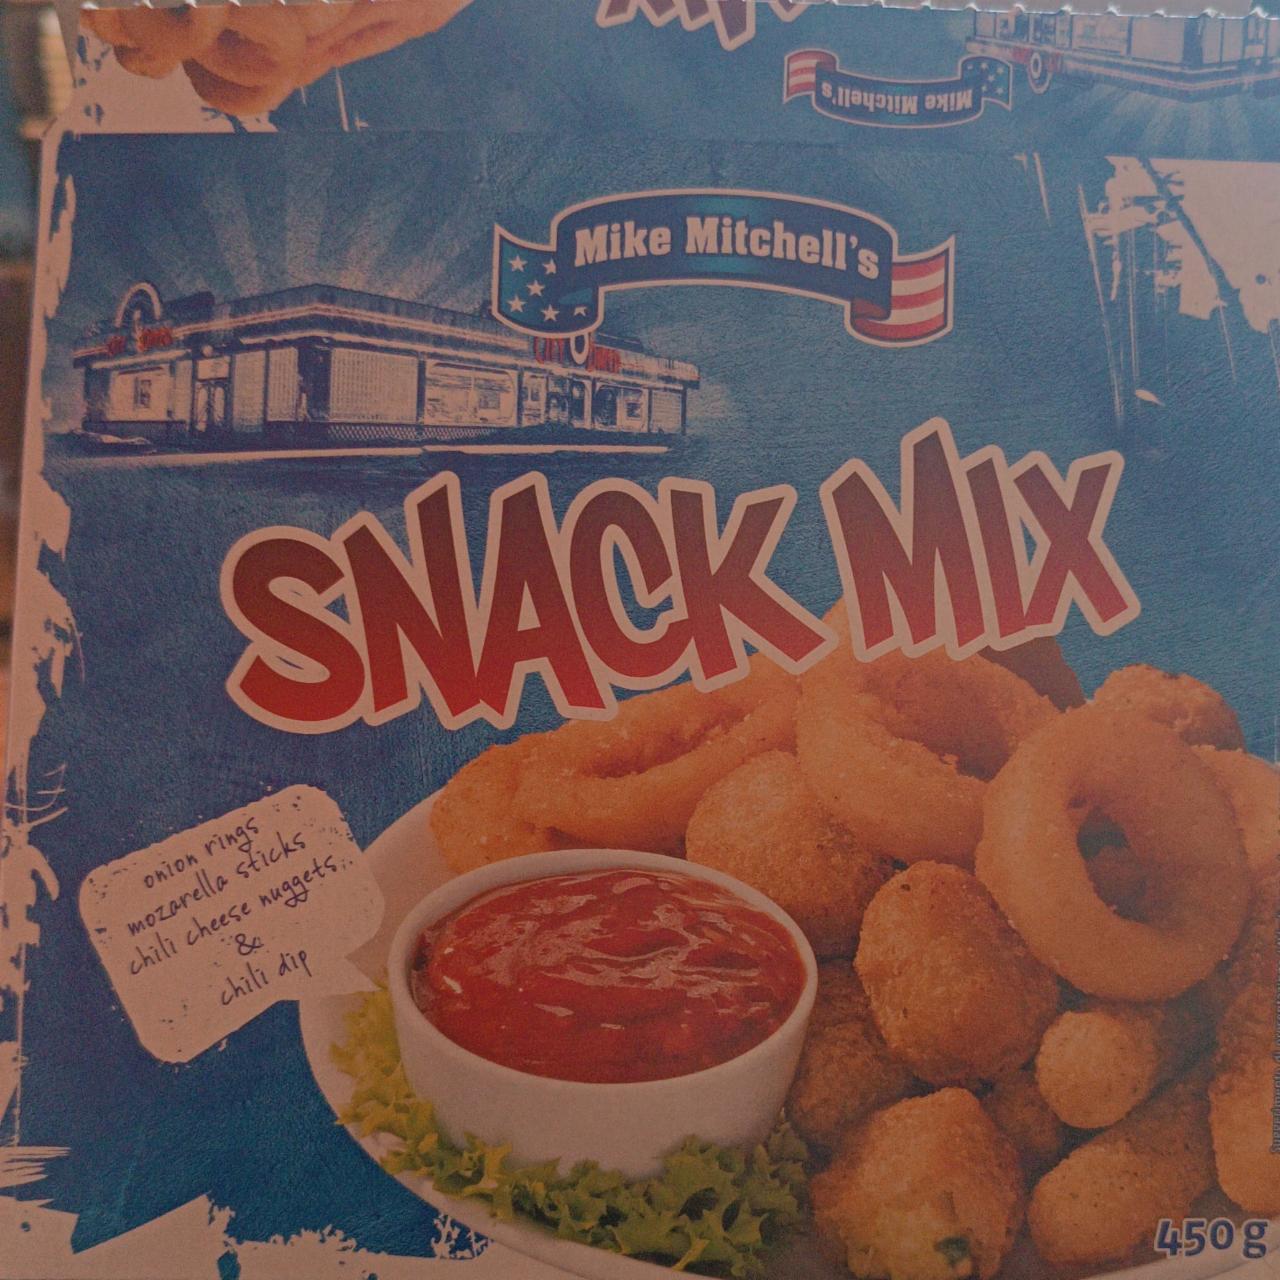 Fotografie - Snack Mix Mozzarella tyčinky Mike Mitchell's